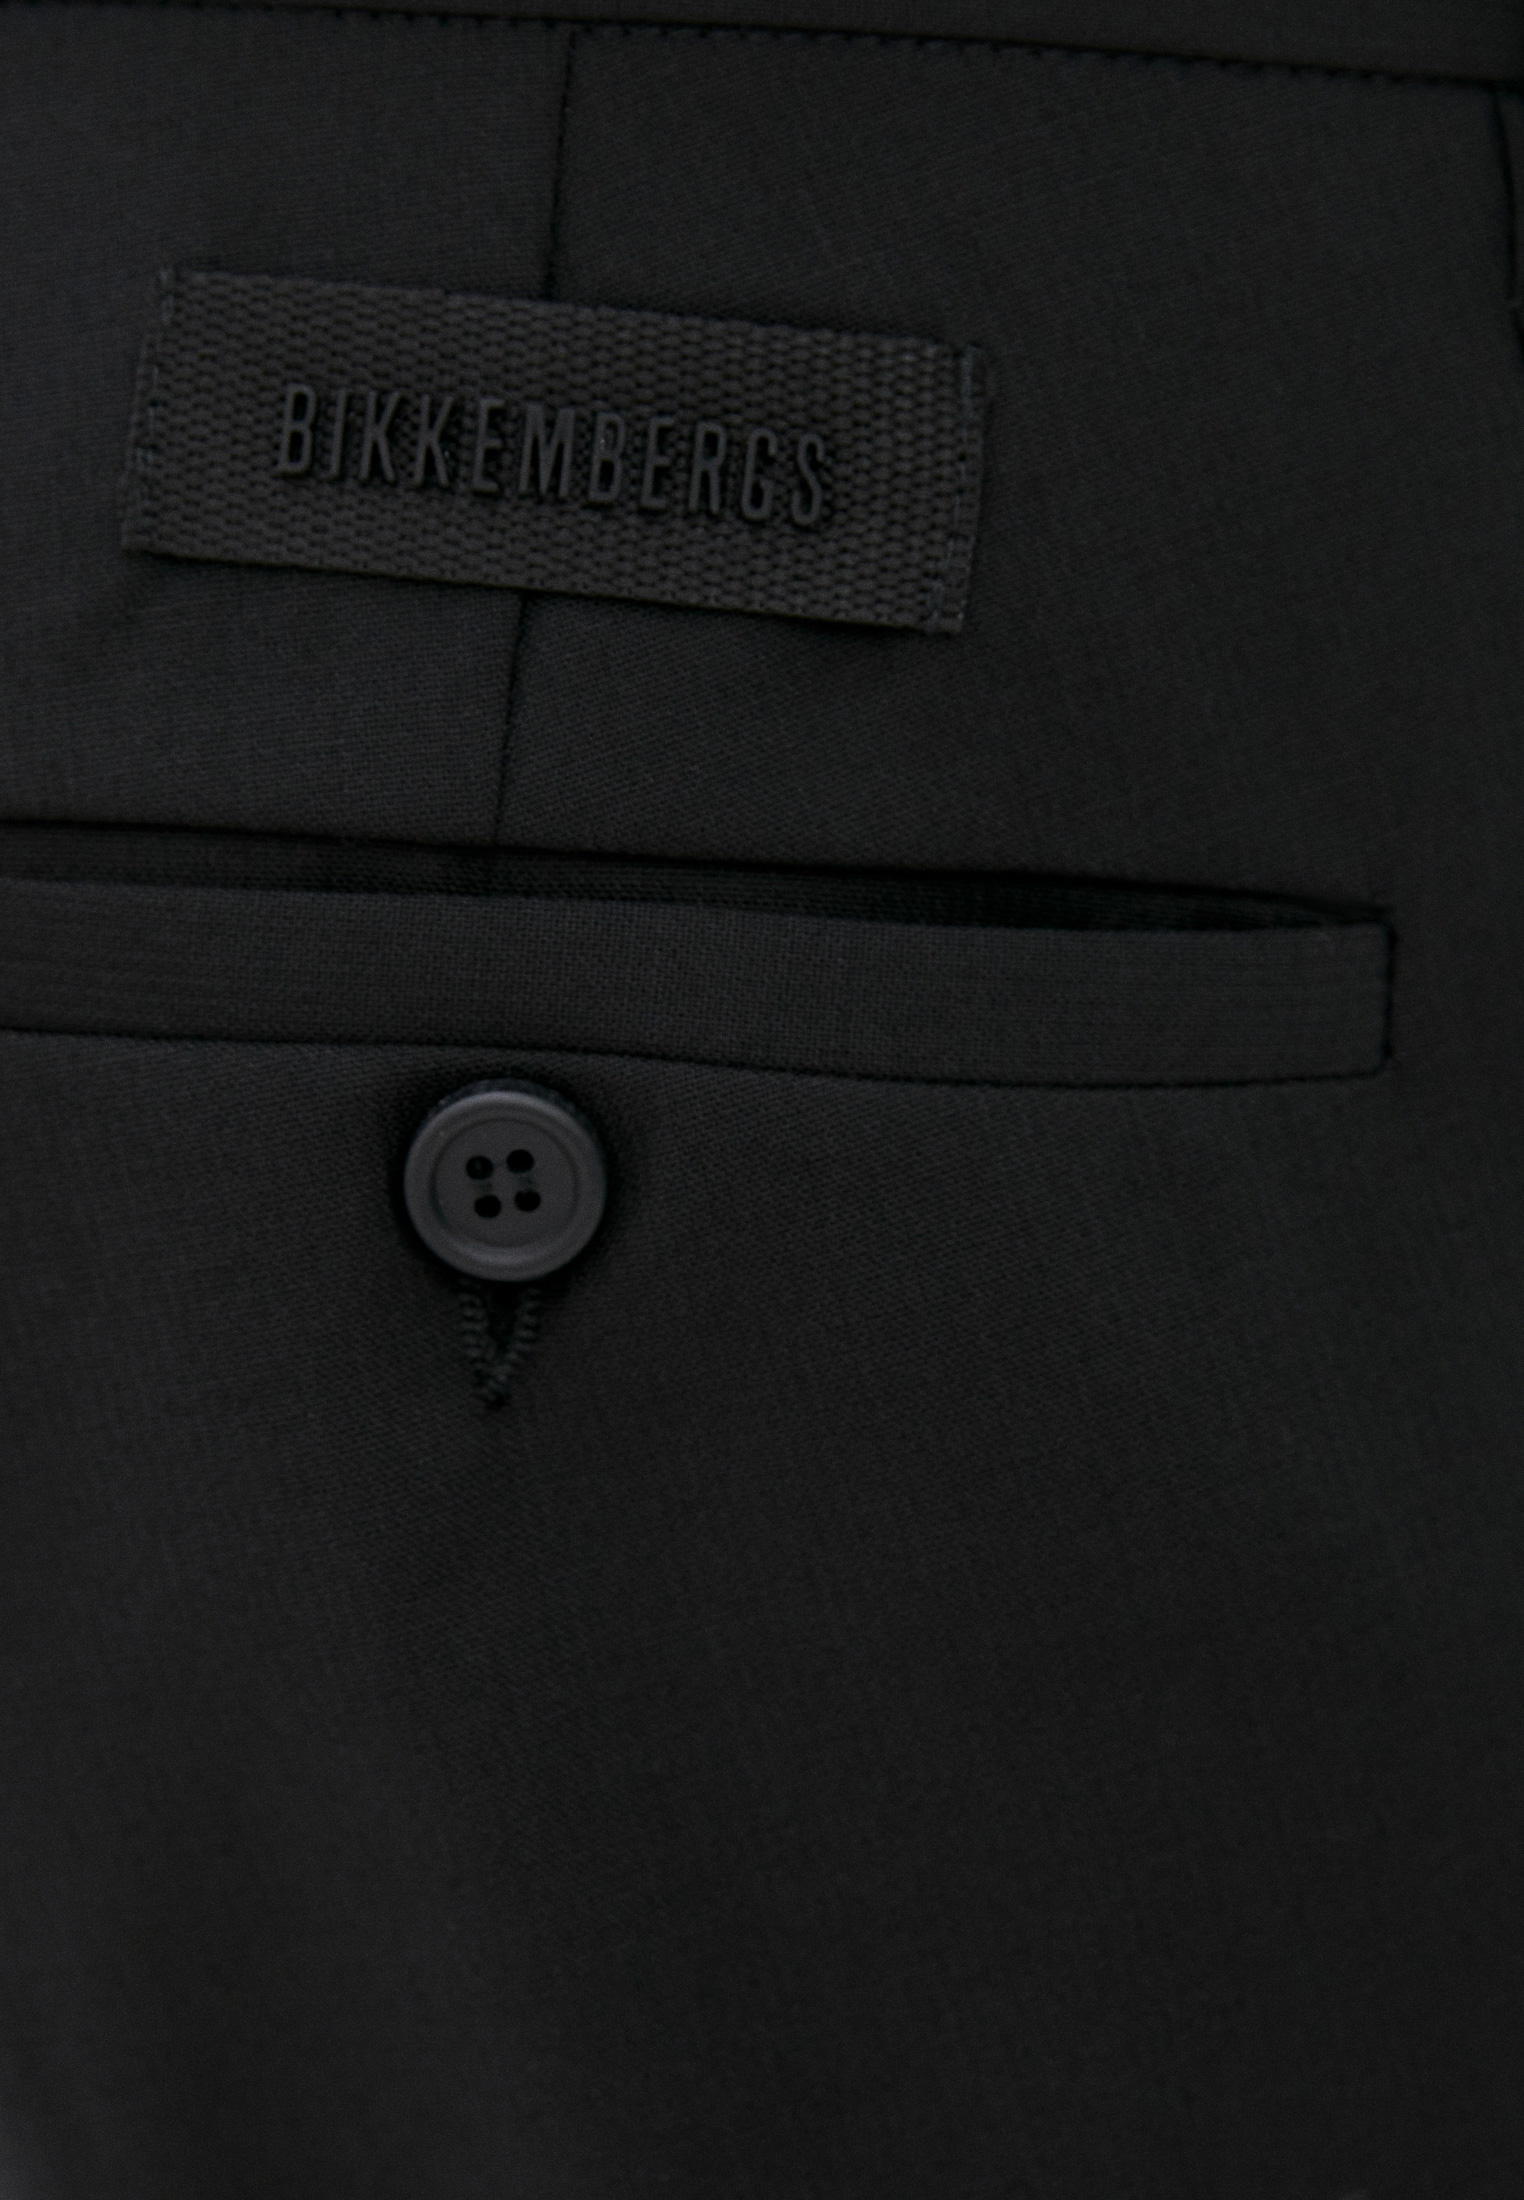 Мужские классические брюки Bikkembergs (Биккембергс) C P 001 00 S 3452: изображение 5